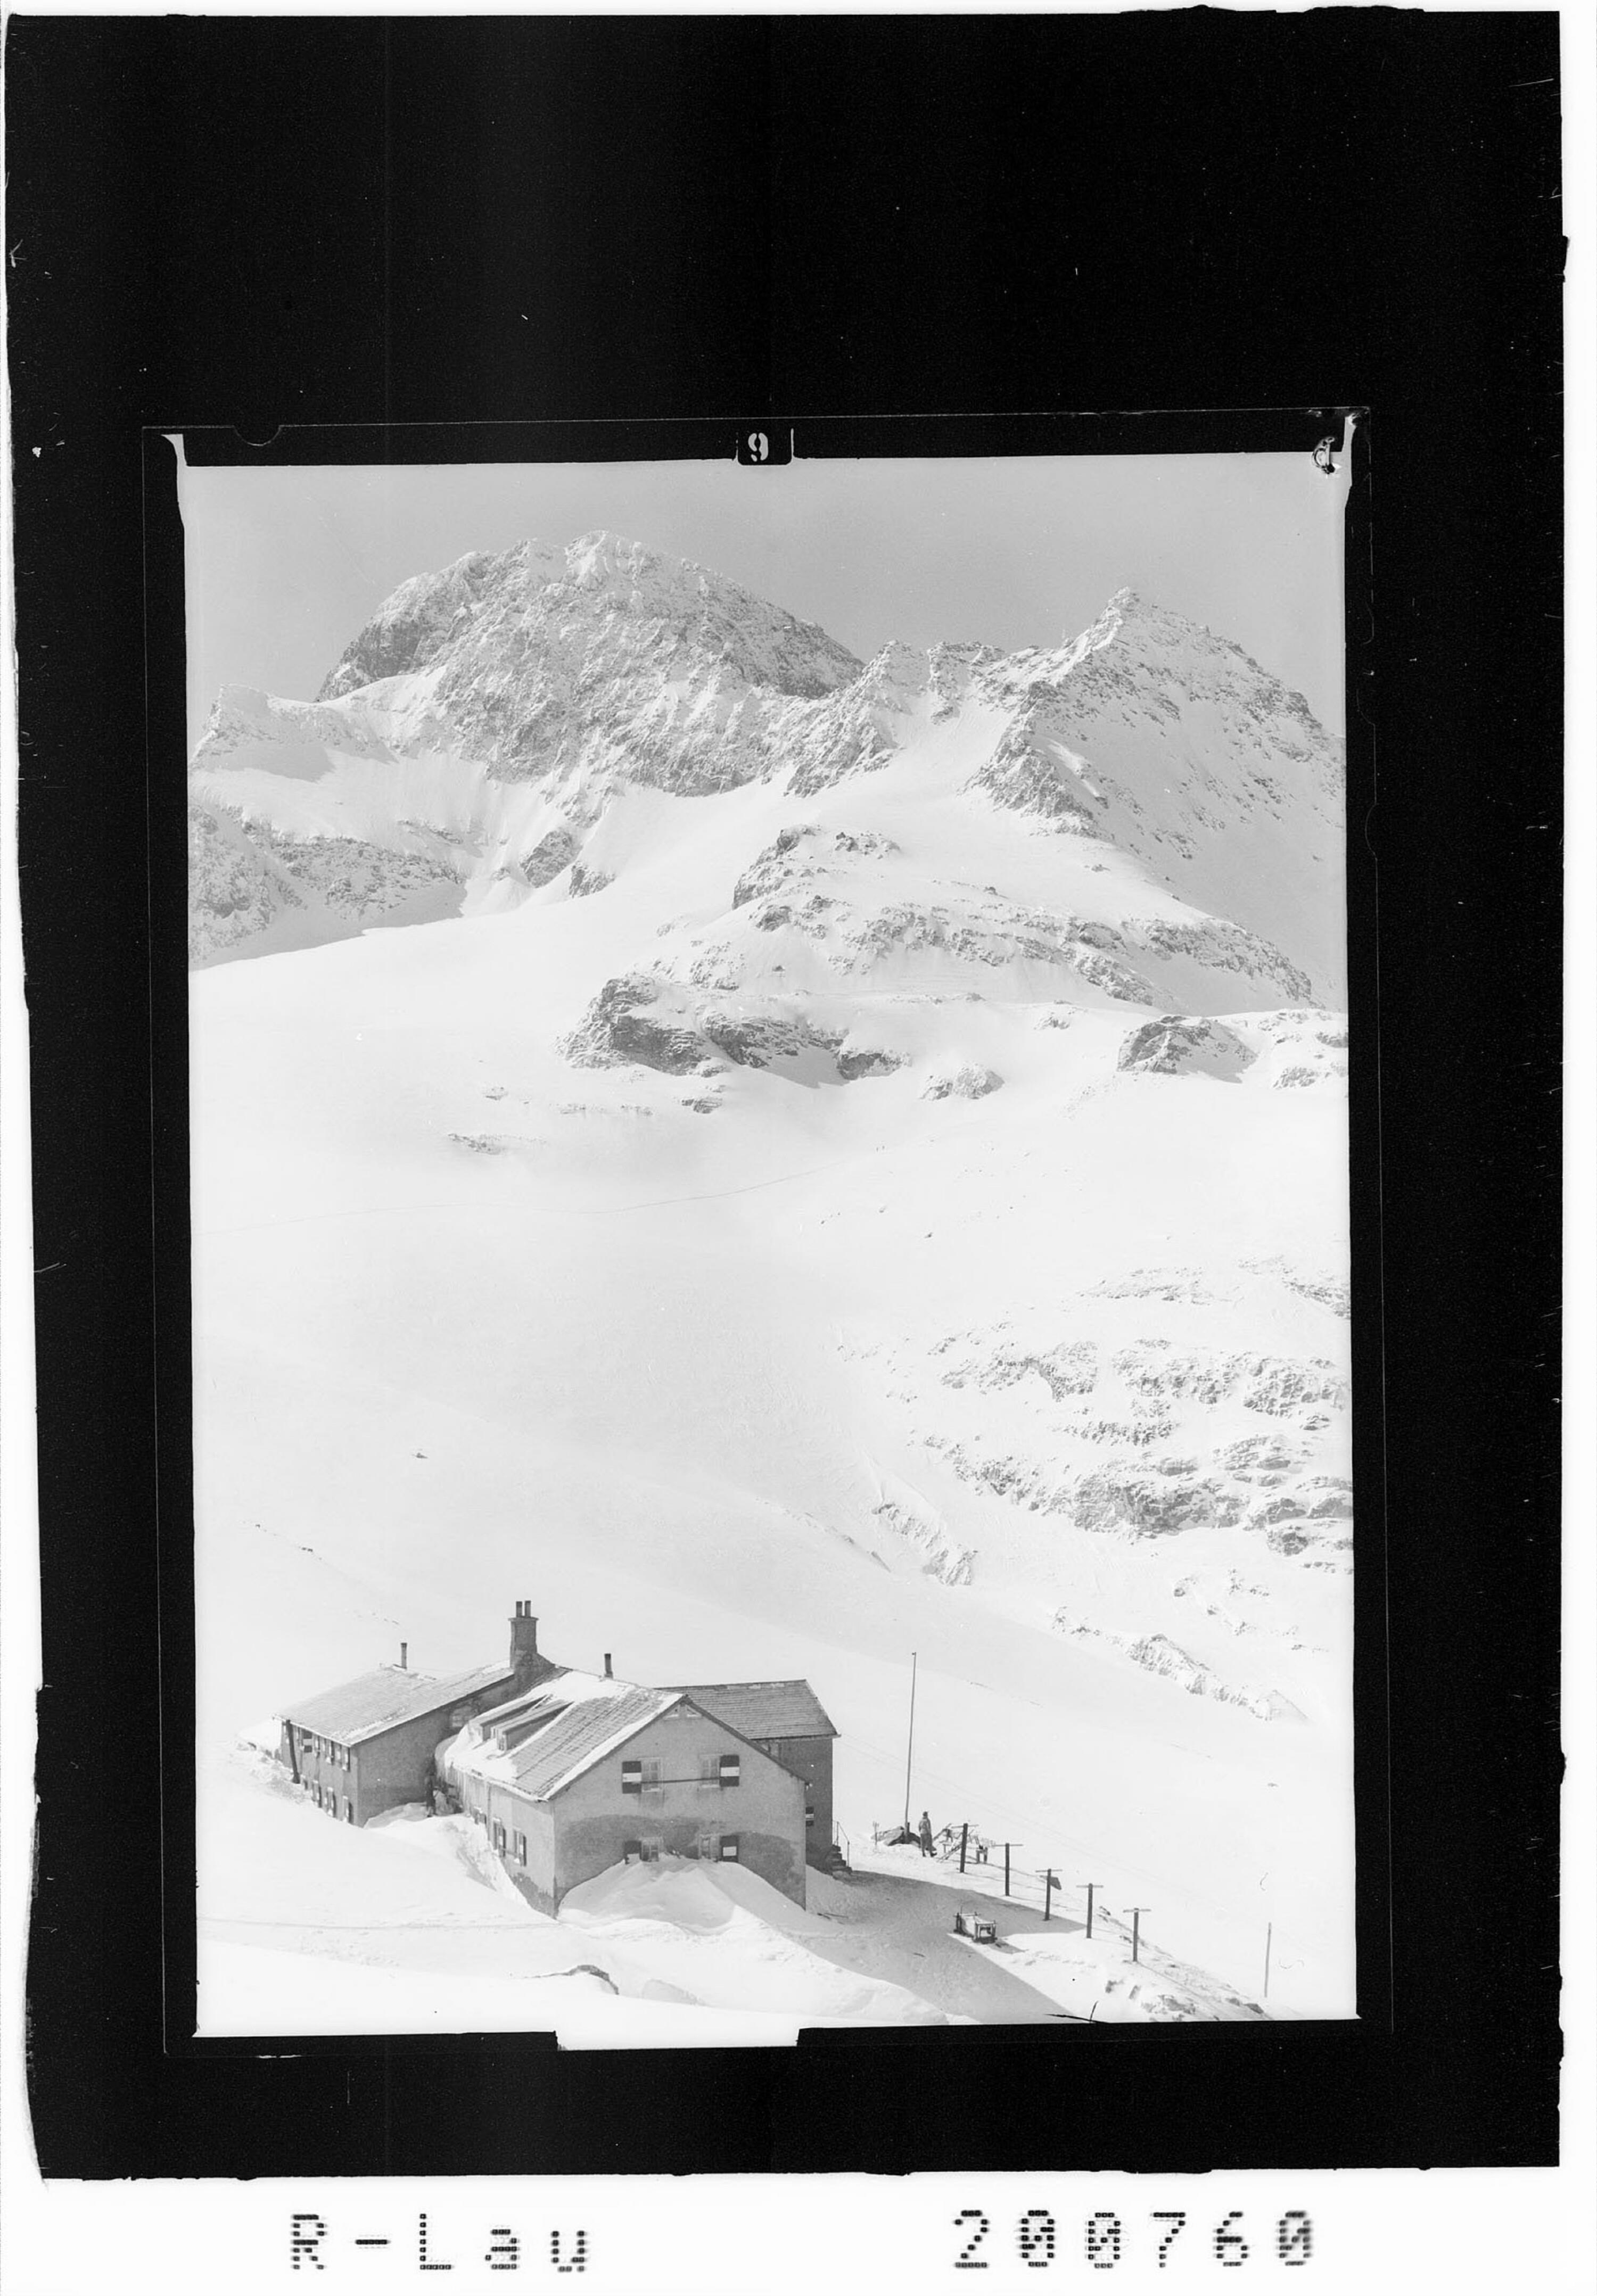 Wiesbadner Hütte 2510 m mit Piz Buin 3312 m und Wiesbadner Grätle></div>


    <hr>
    <div class=